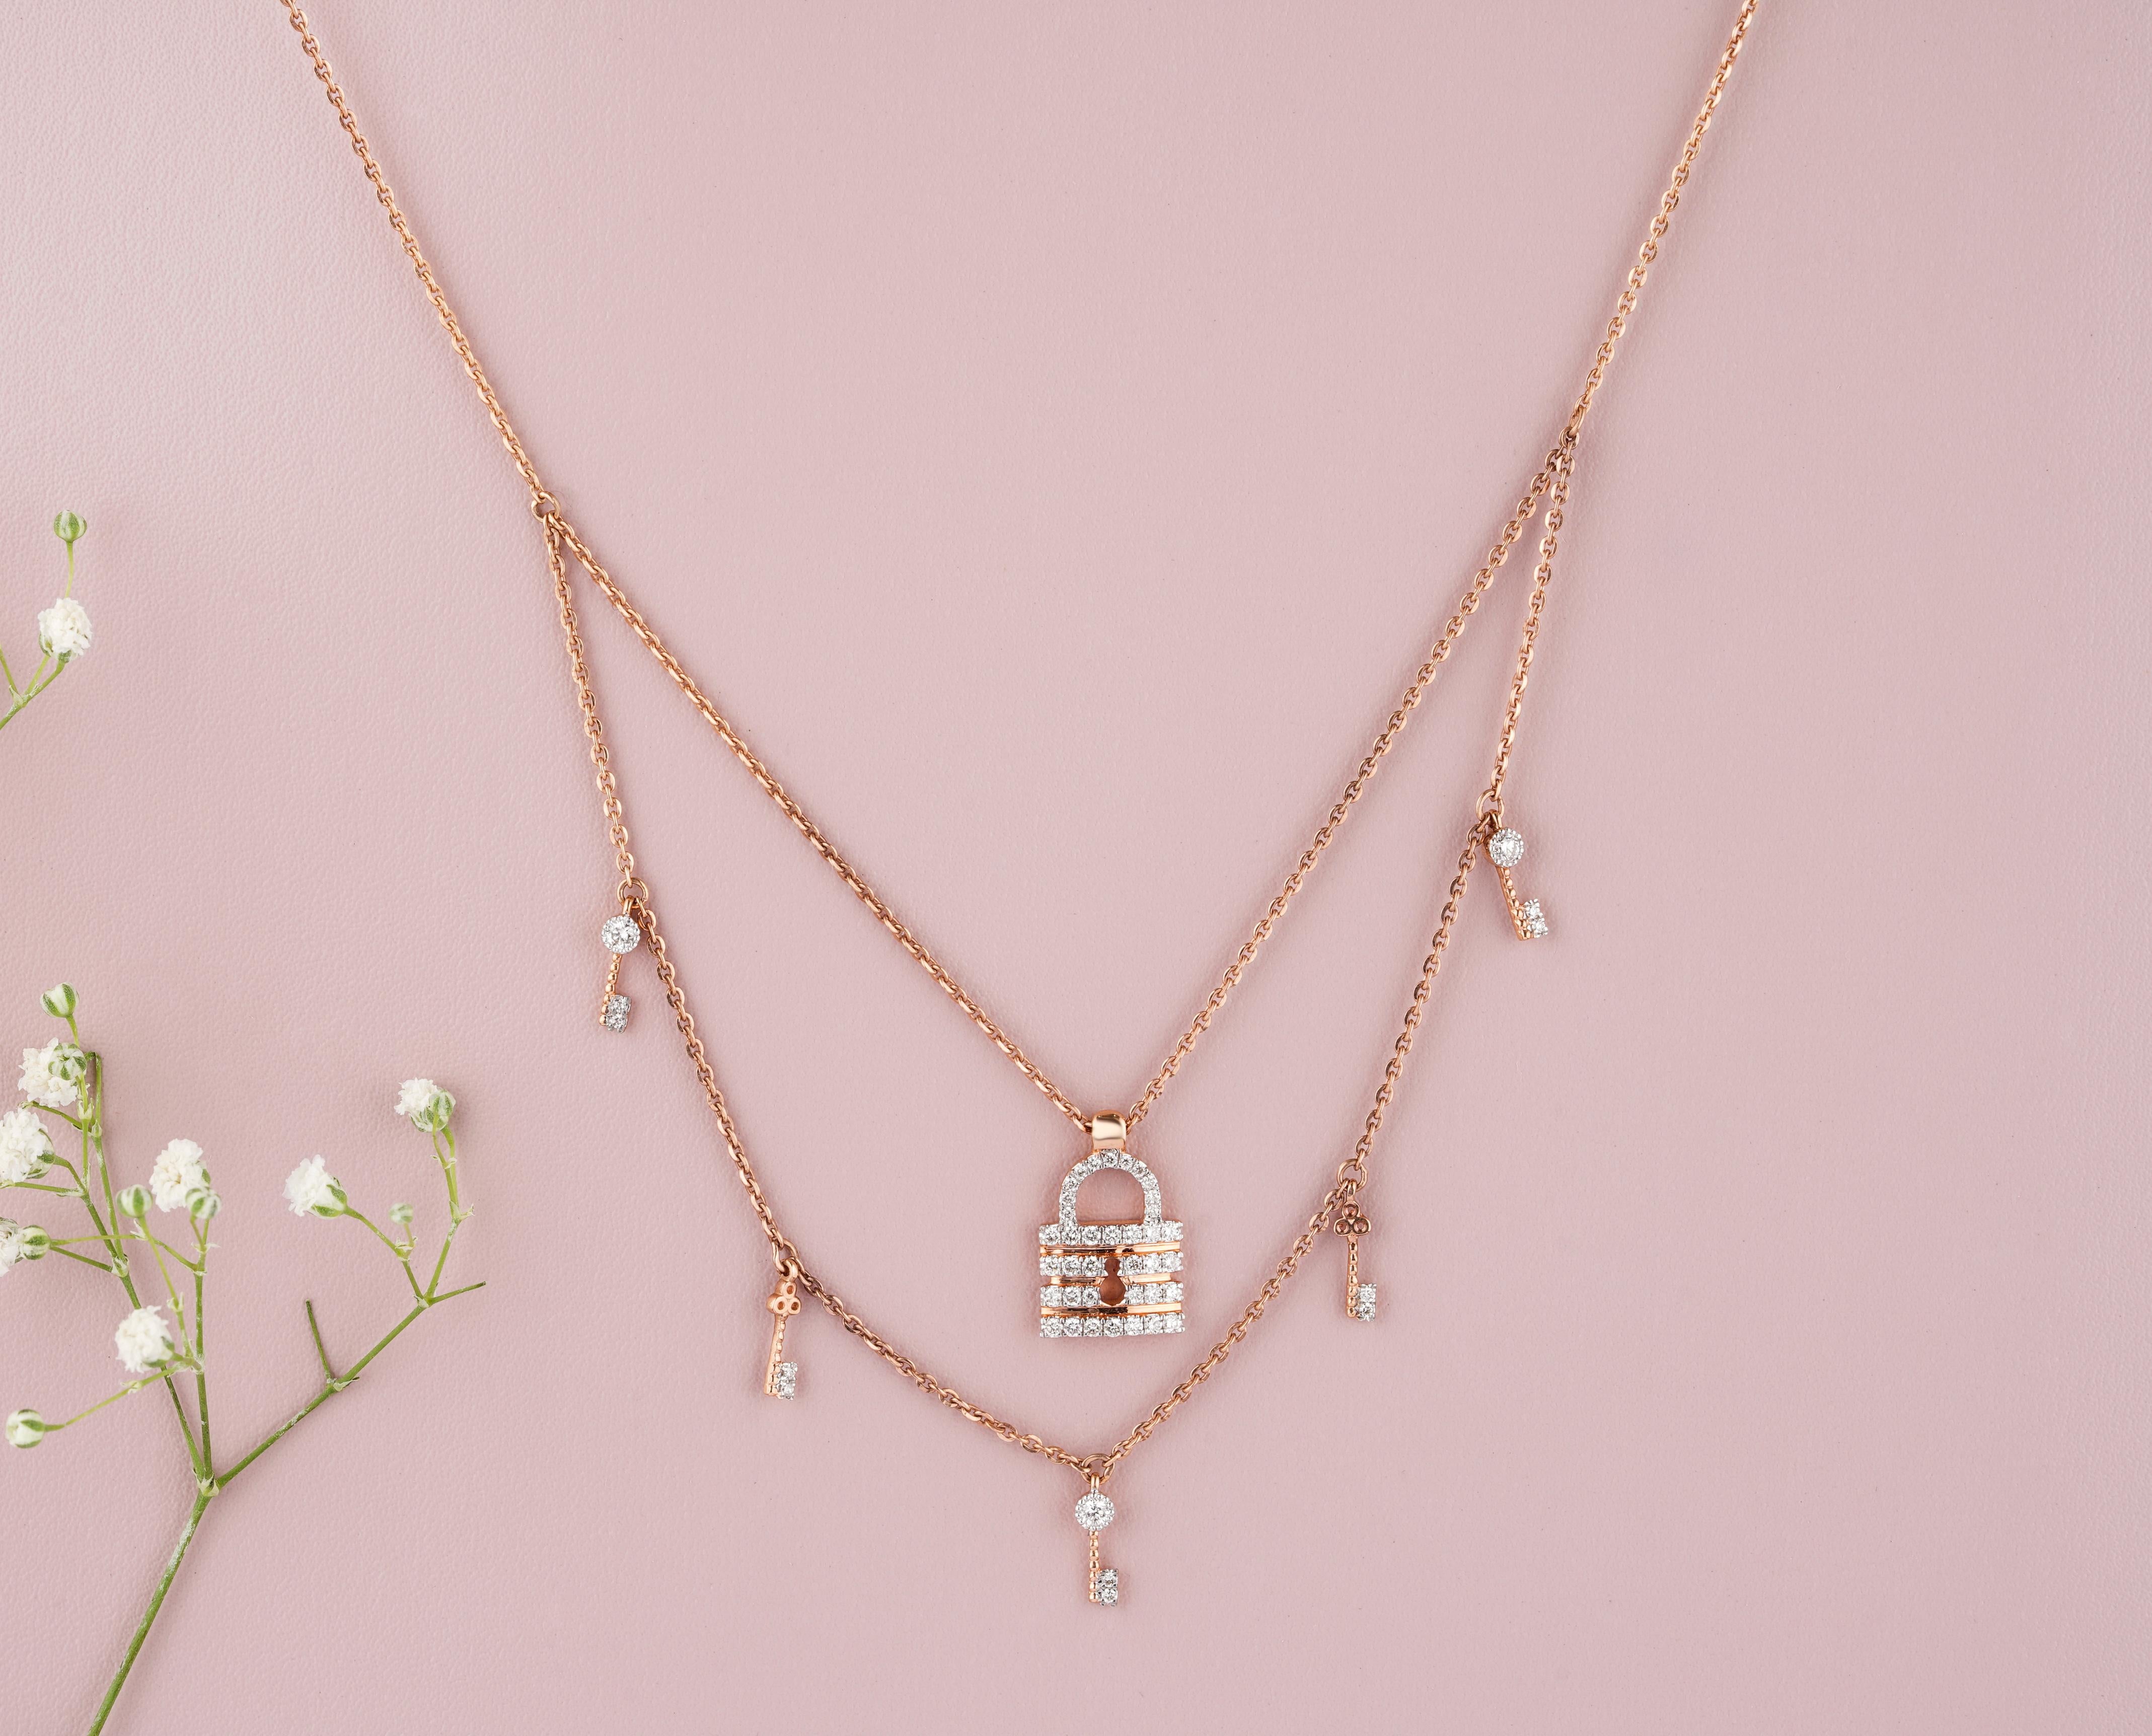 Le collier Lock & Key Diamond Charms est un superbe bijou en or massif 18 carats. Il est composé d'une double couche, l'une présentant une breloque de serrure et l'autre des breloques de clés. Le pendentif de la serrure est orné de diamants exquis,